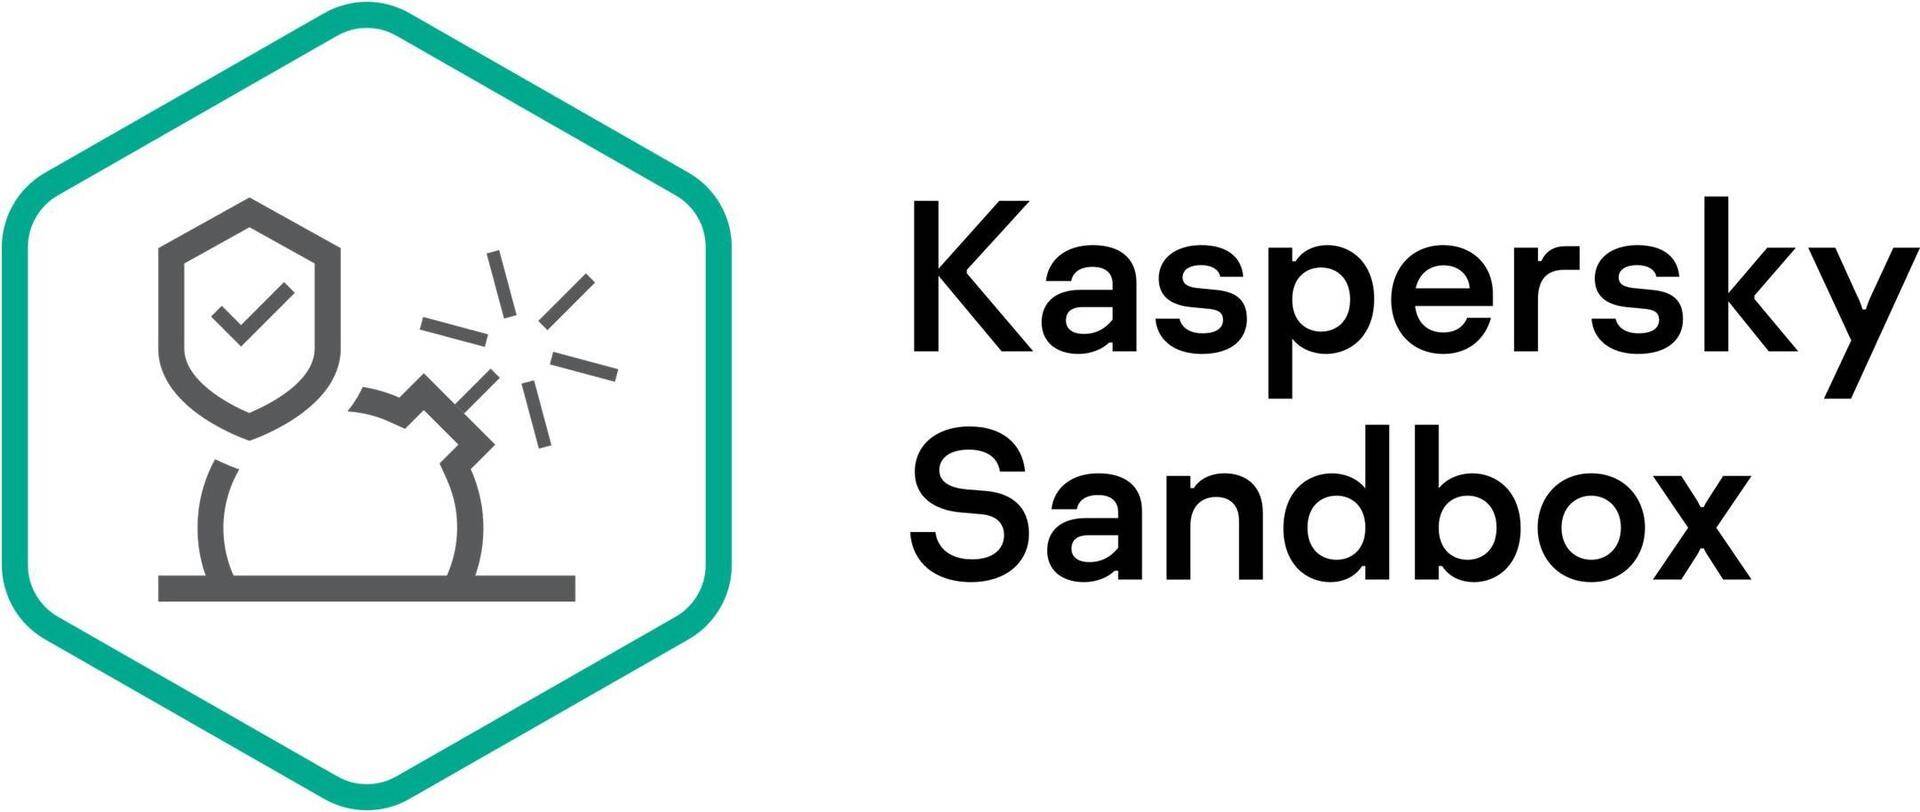 Kaspersky Sandbox - Abonnement-Lizenz (1 Jahr) - 1 Knoten - Volumen - Stufe T (250-499) - Europa von Kaspersky Lab